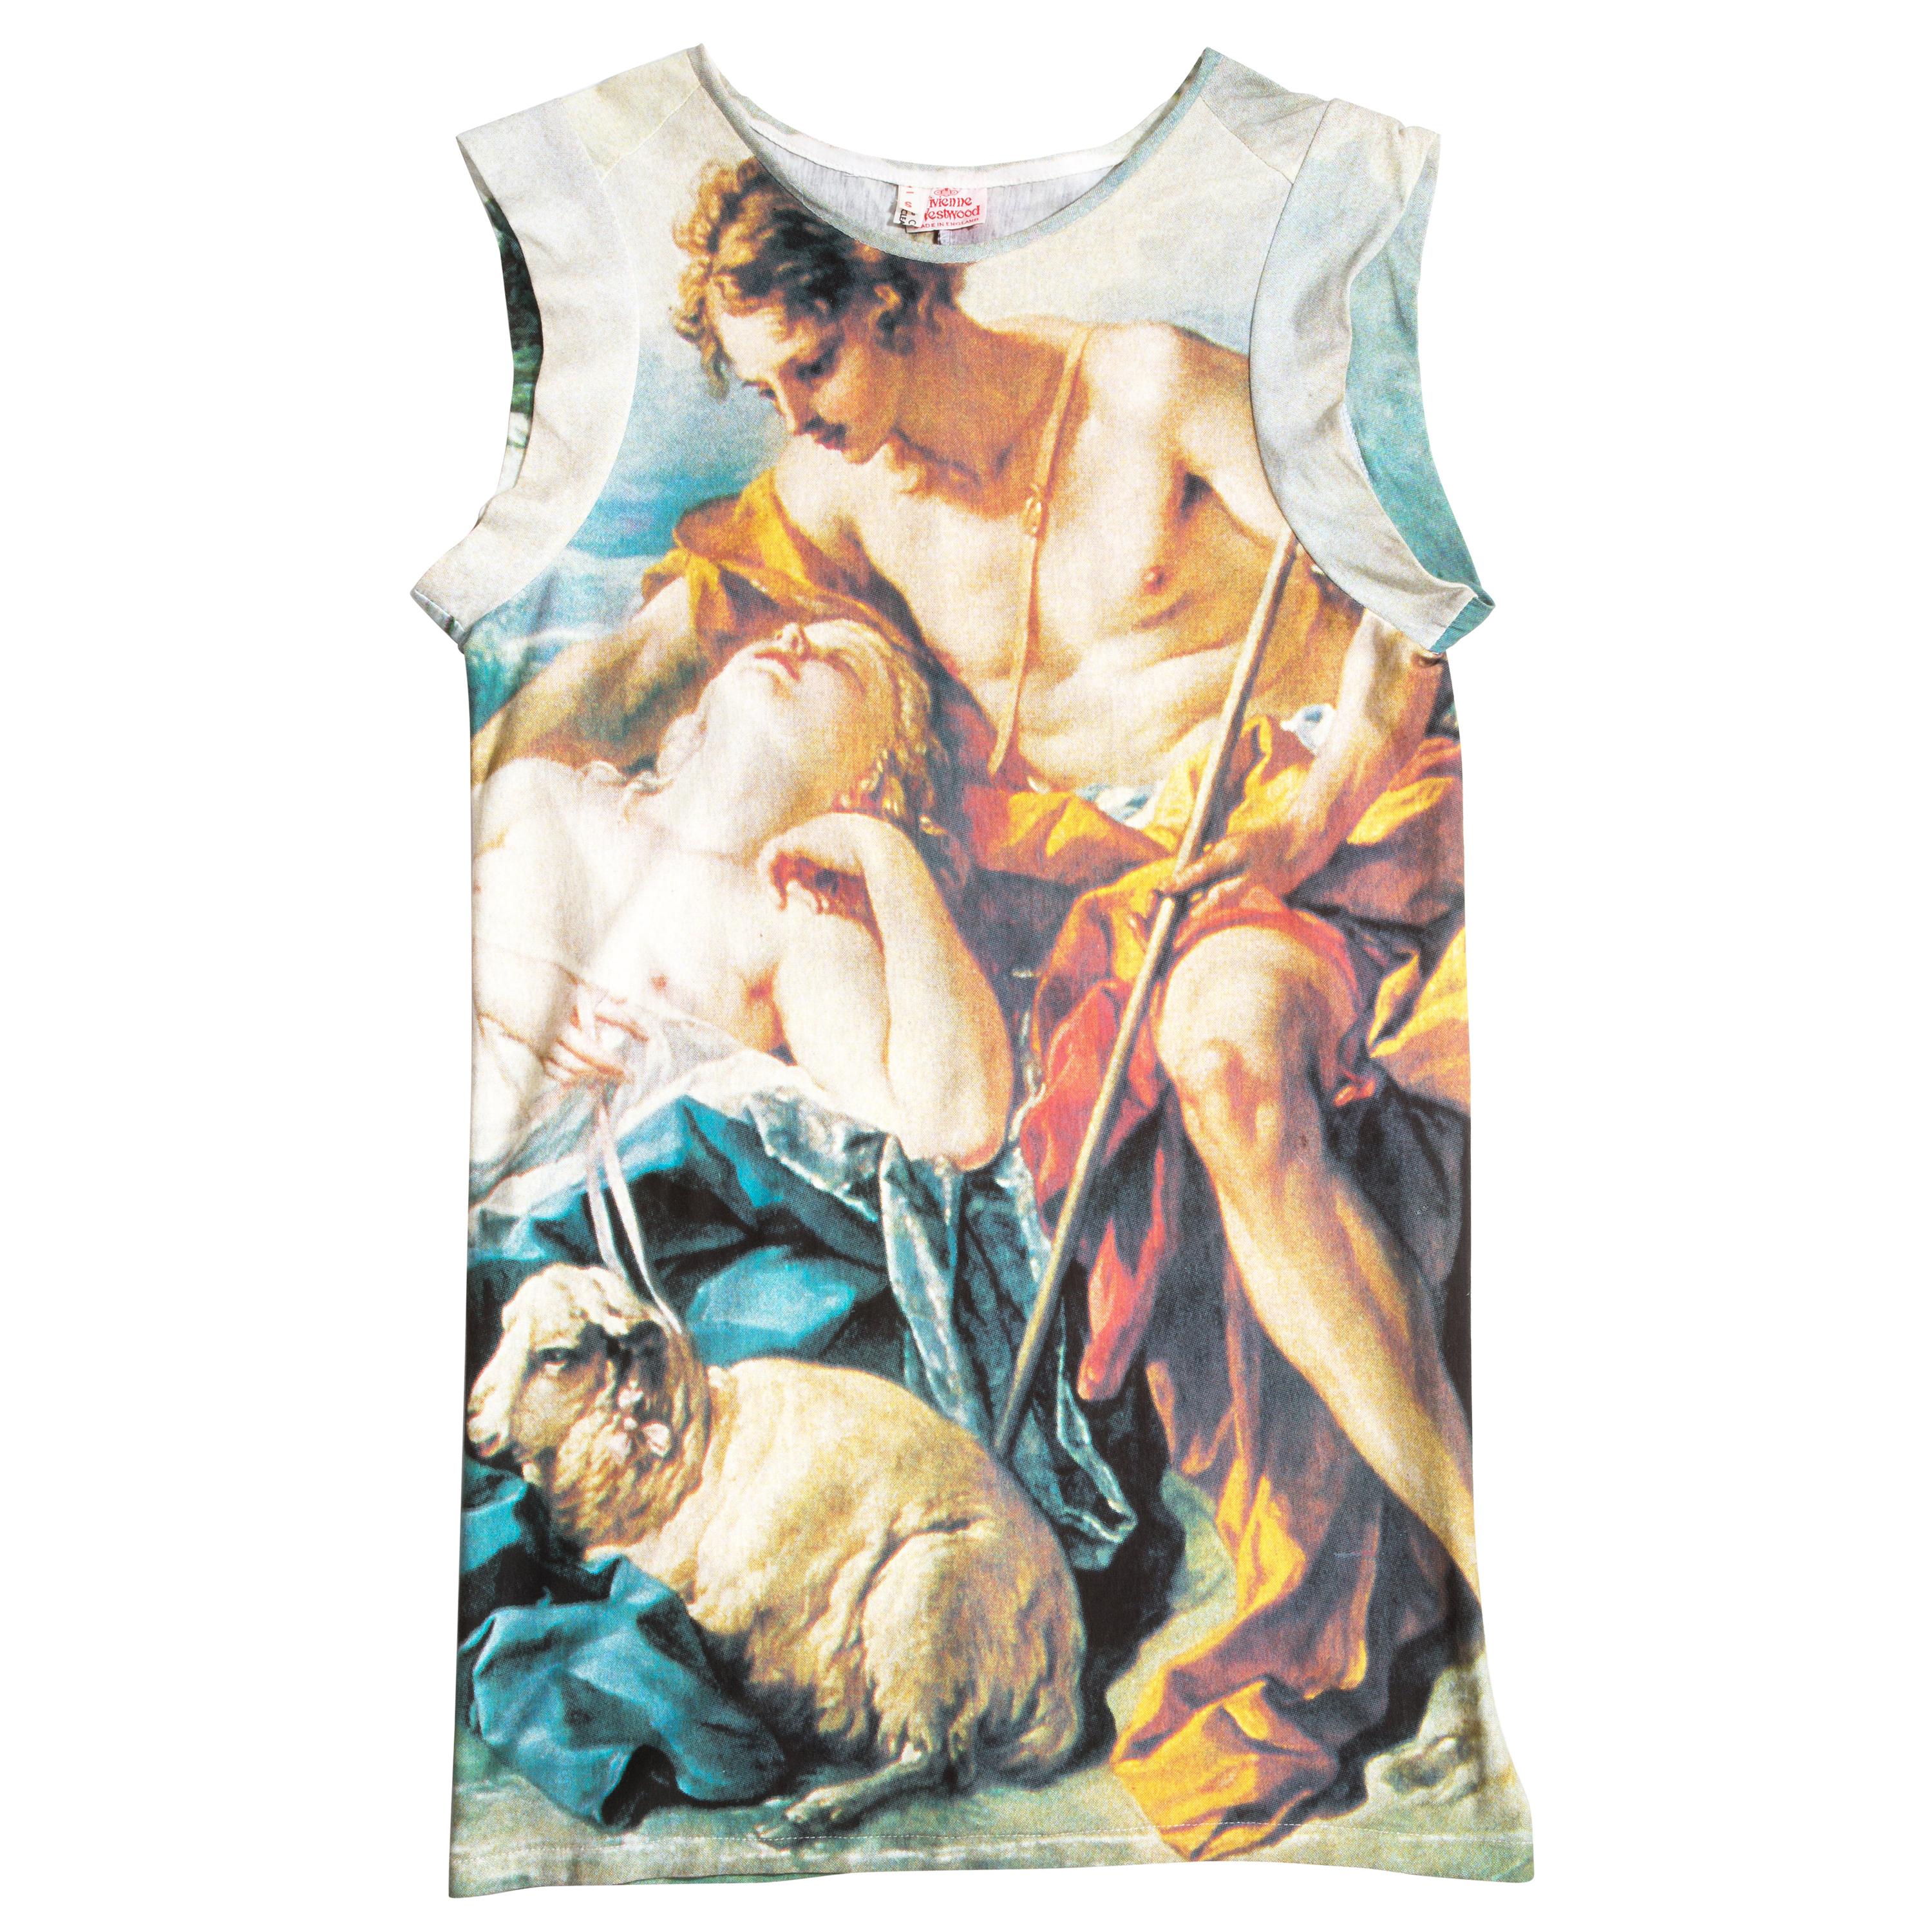 Vivienne Westwood cotton jersey mini dress with François Boucher print, ss 1991